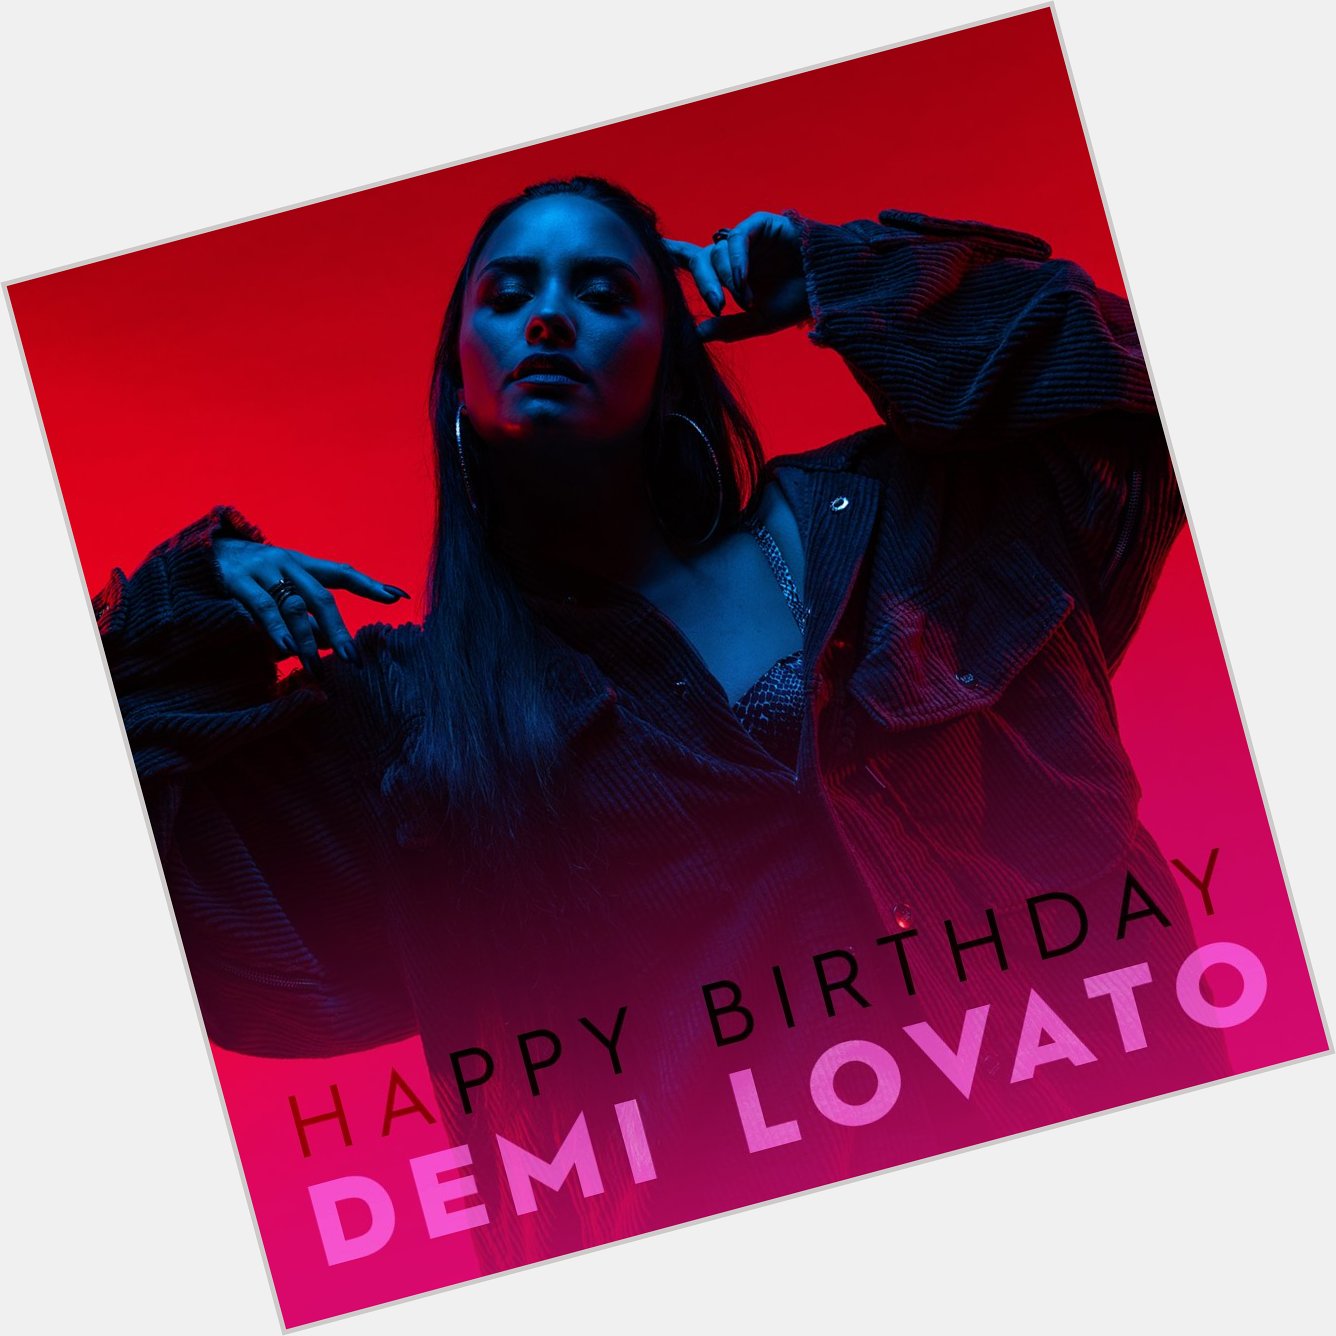 Happy Birthday to this beauty, Demi Lovato! 